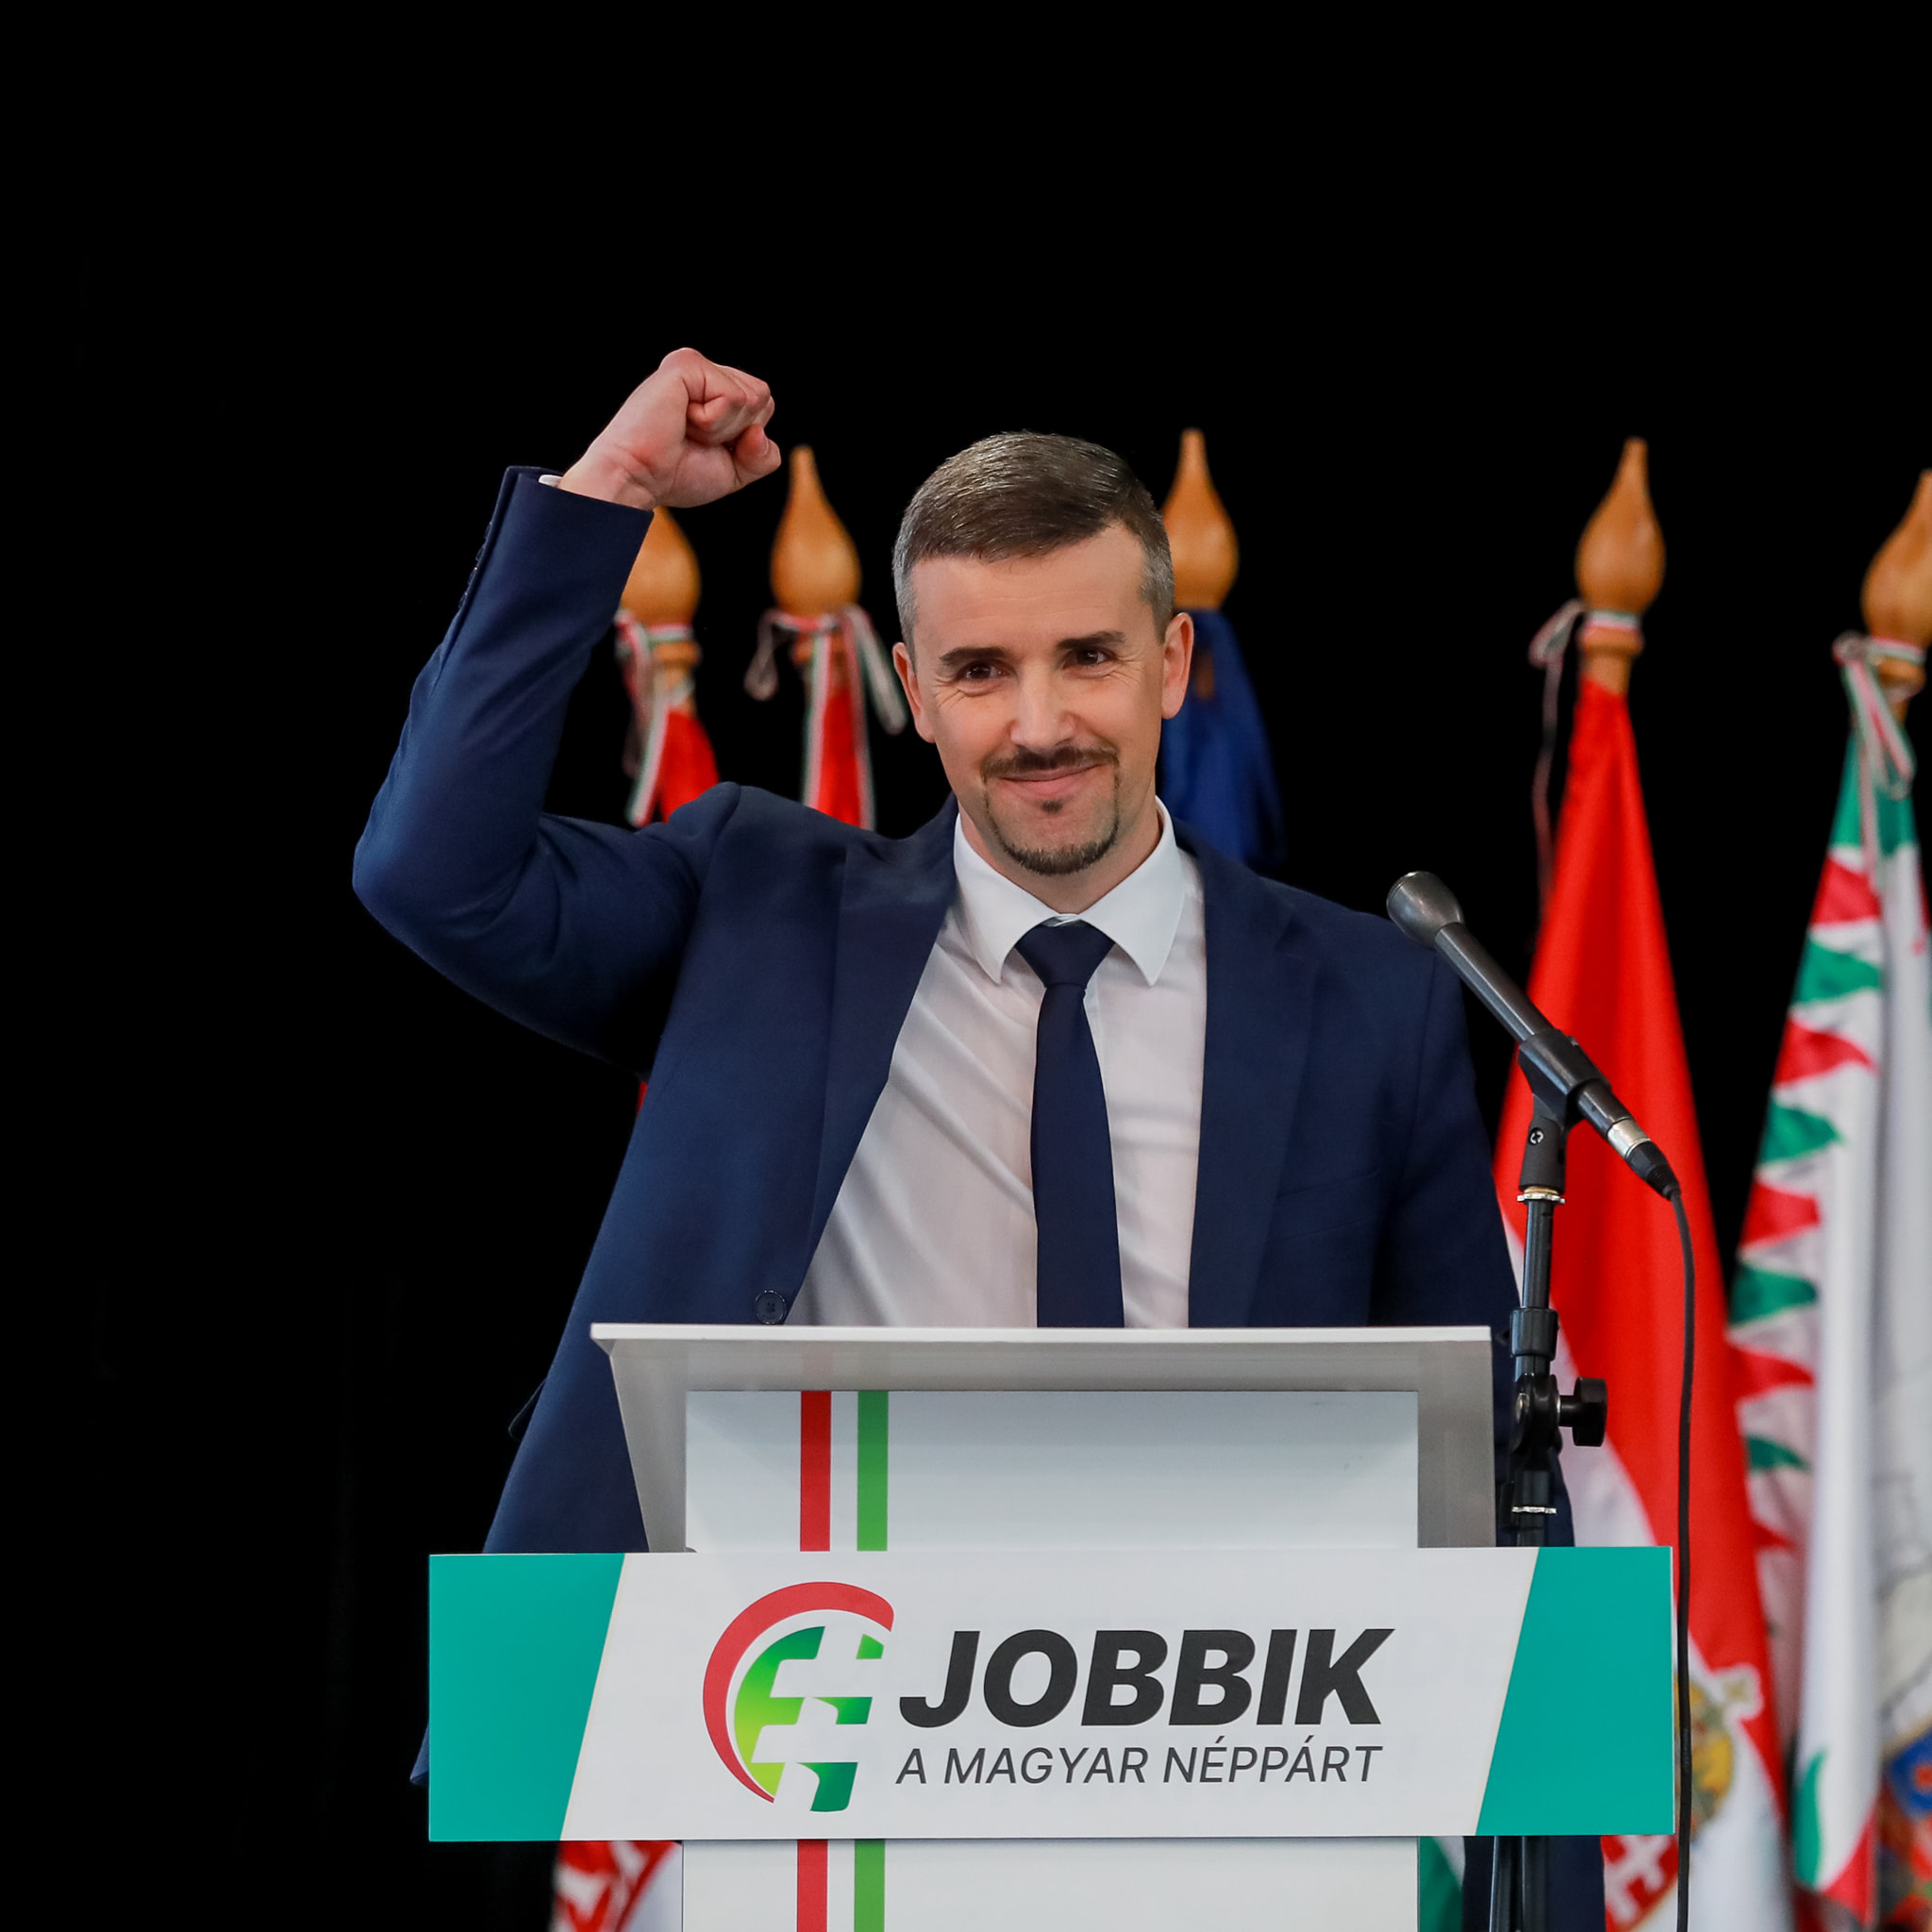 Péter Jakab zum Vorsitzenden der Jobbik wiedergewählt